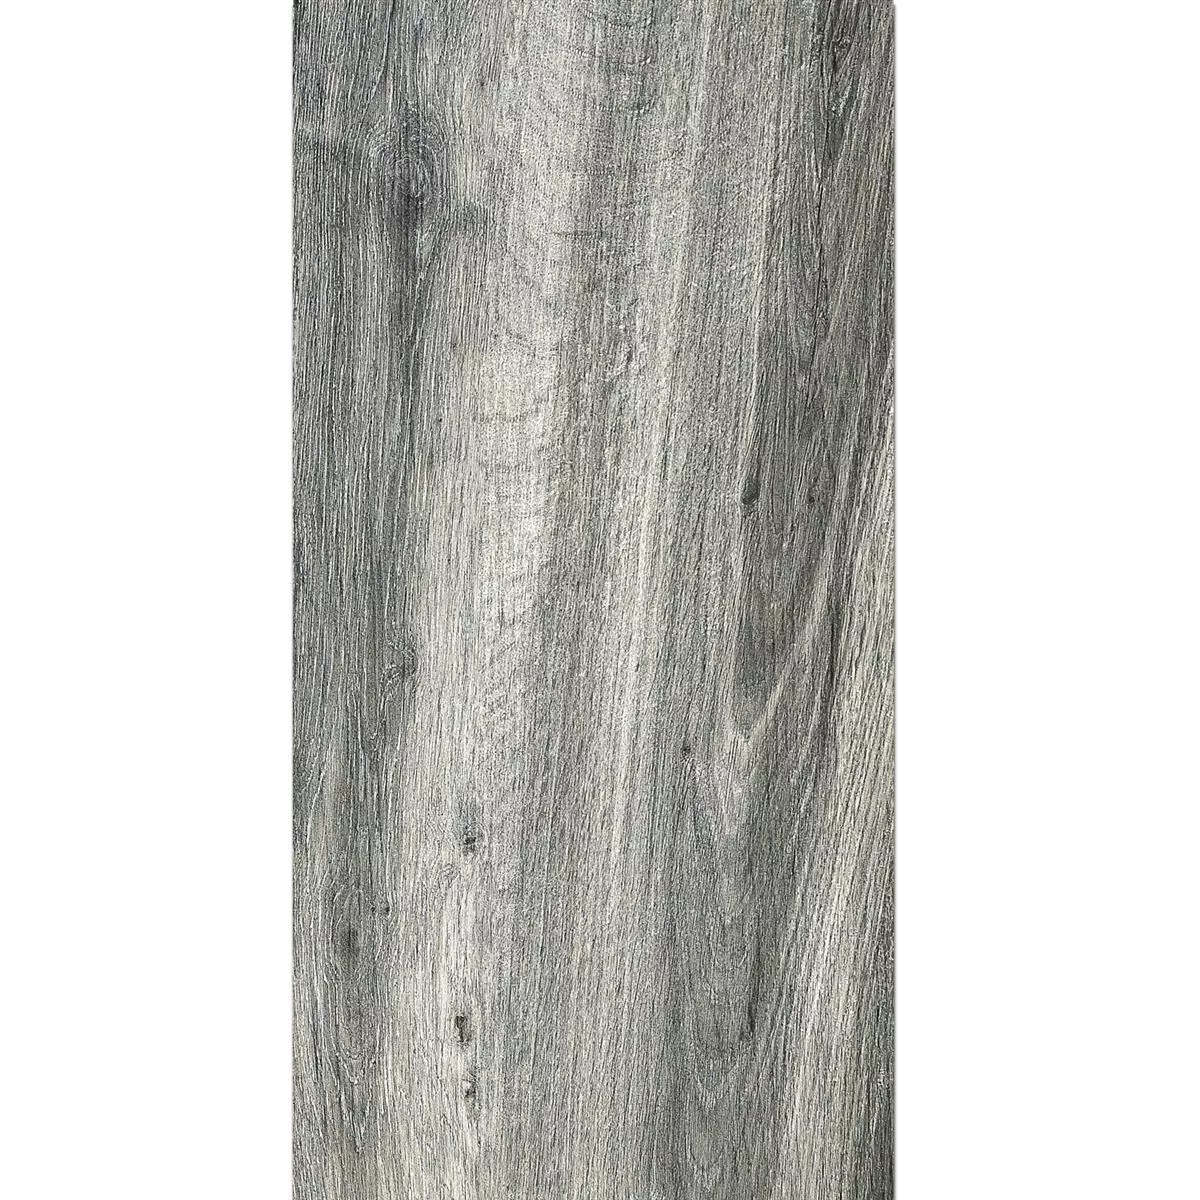 Muestra Losas Para Terrazas Starwood Aspecto De Madera Grey 45x90cm